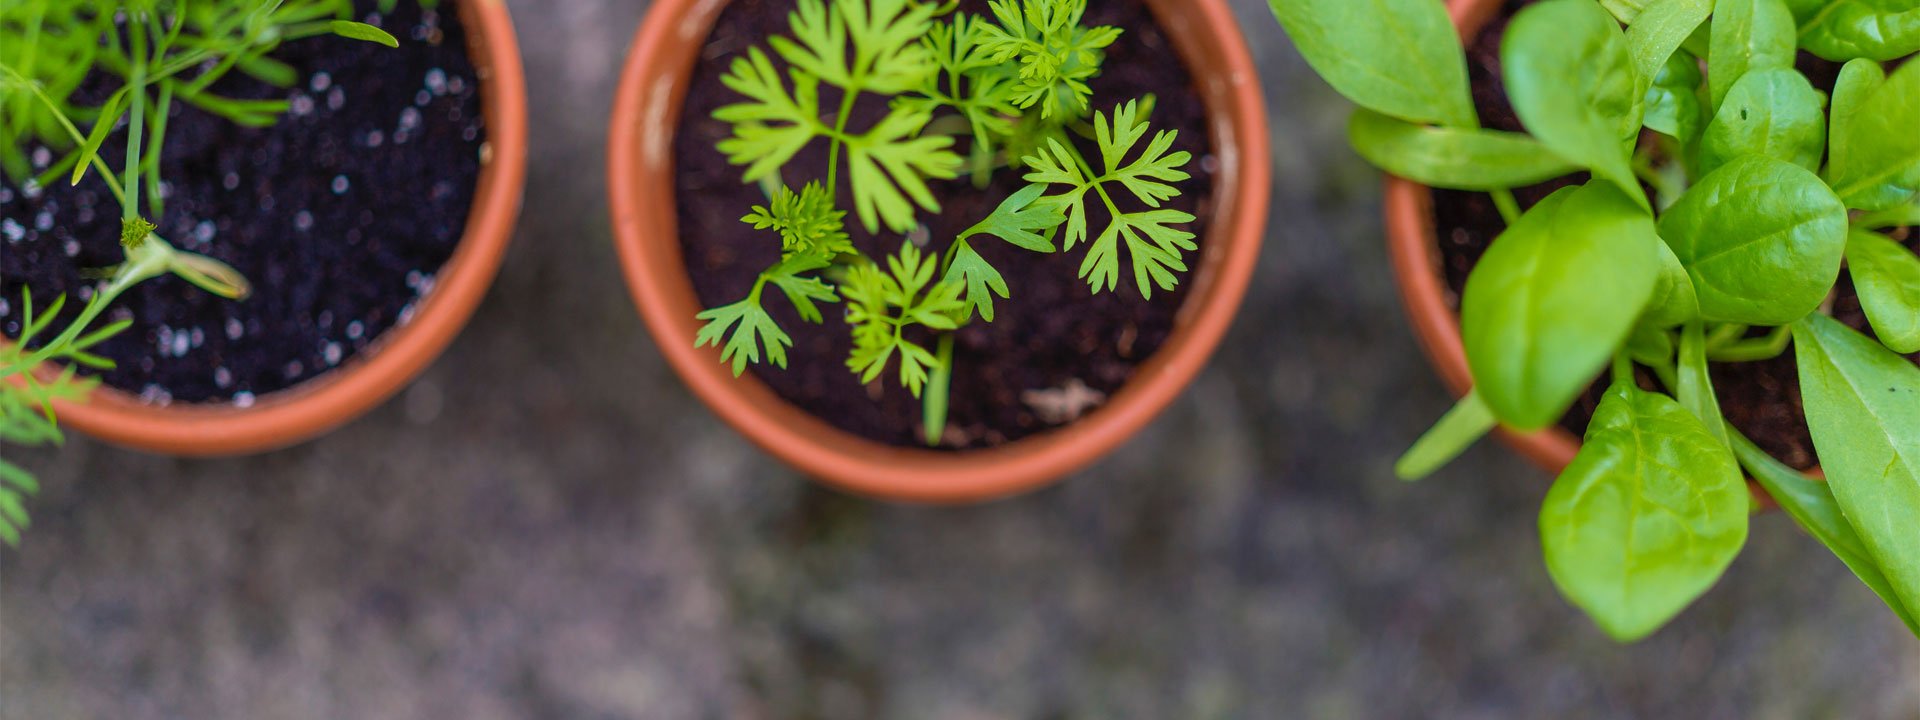 Comment conserver ses plantes aromatiques ?